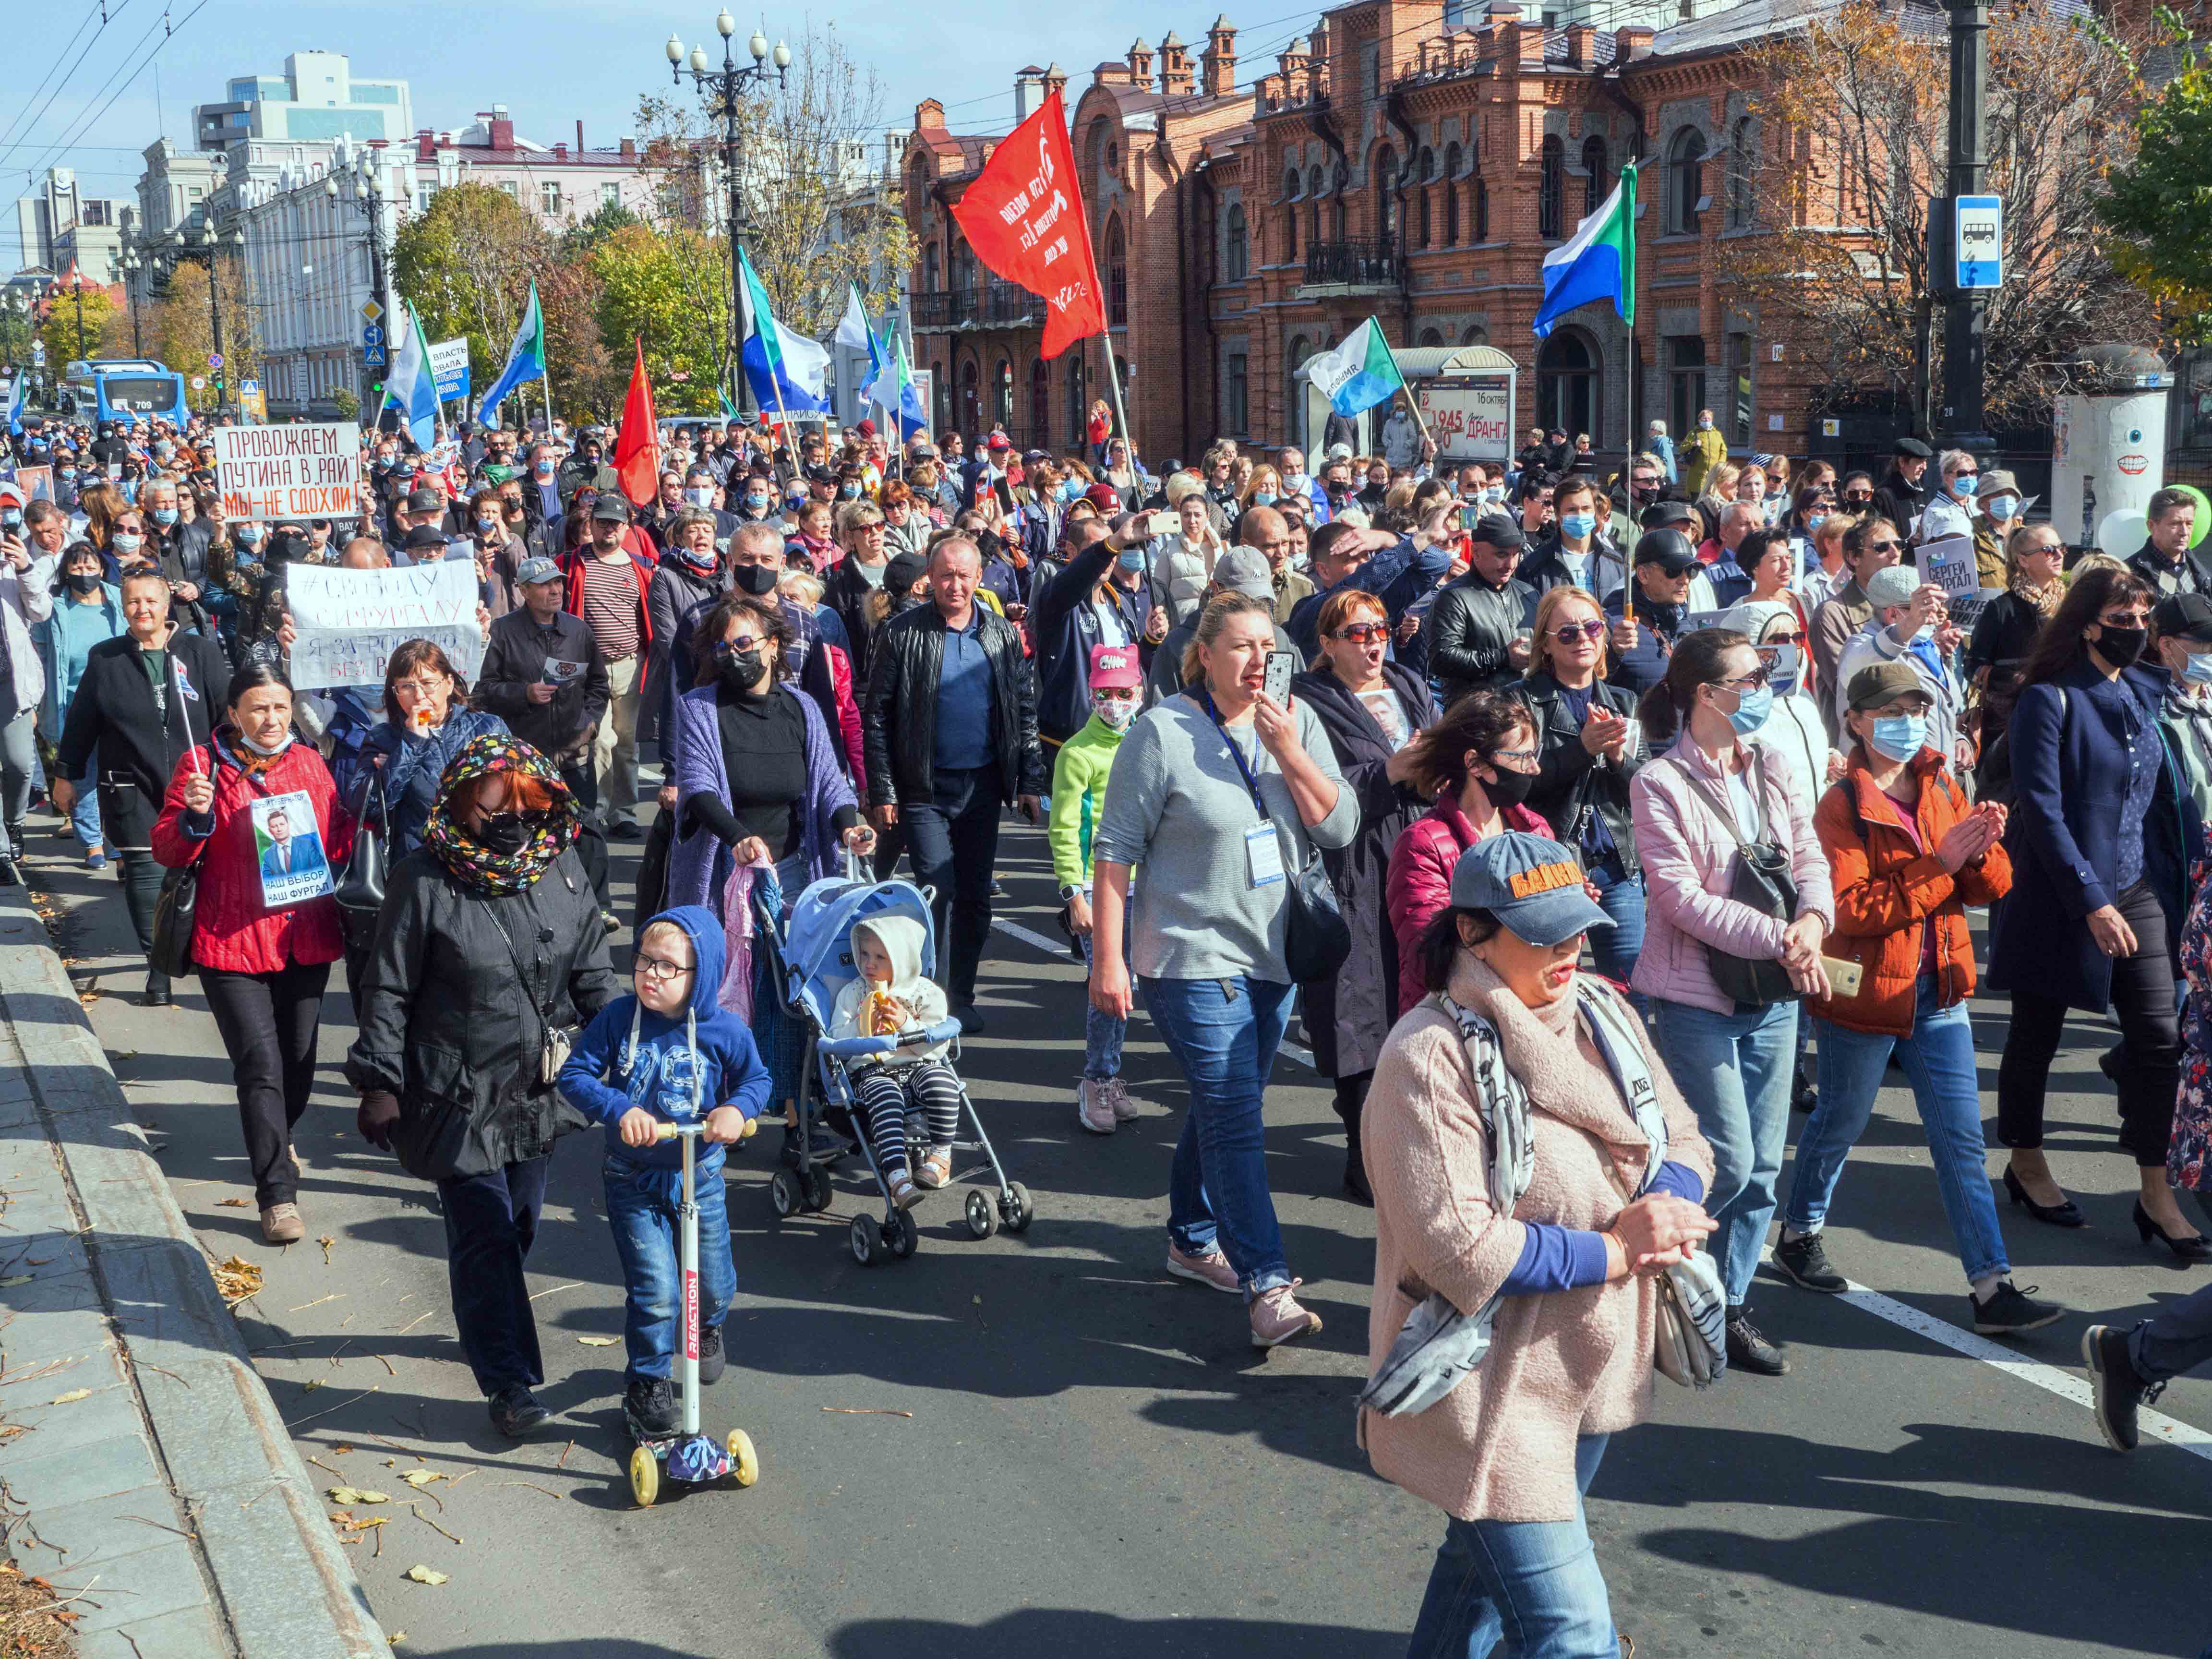 Протестующие в поддержку бывшего губернатора области Сергея Фургала, Хабаровск, 10 октября 2020 года. Полиция задержала несколько десятков участников впервые с начала акций протеста три месяца назад.